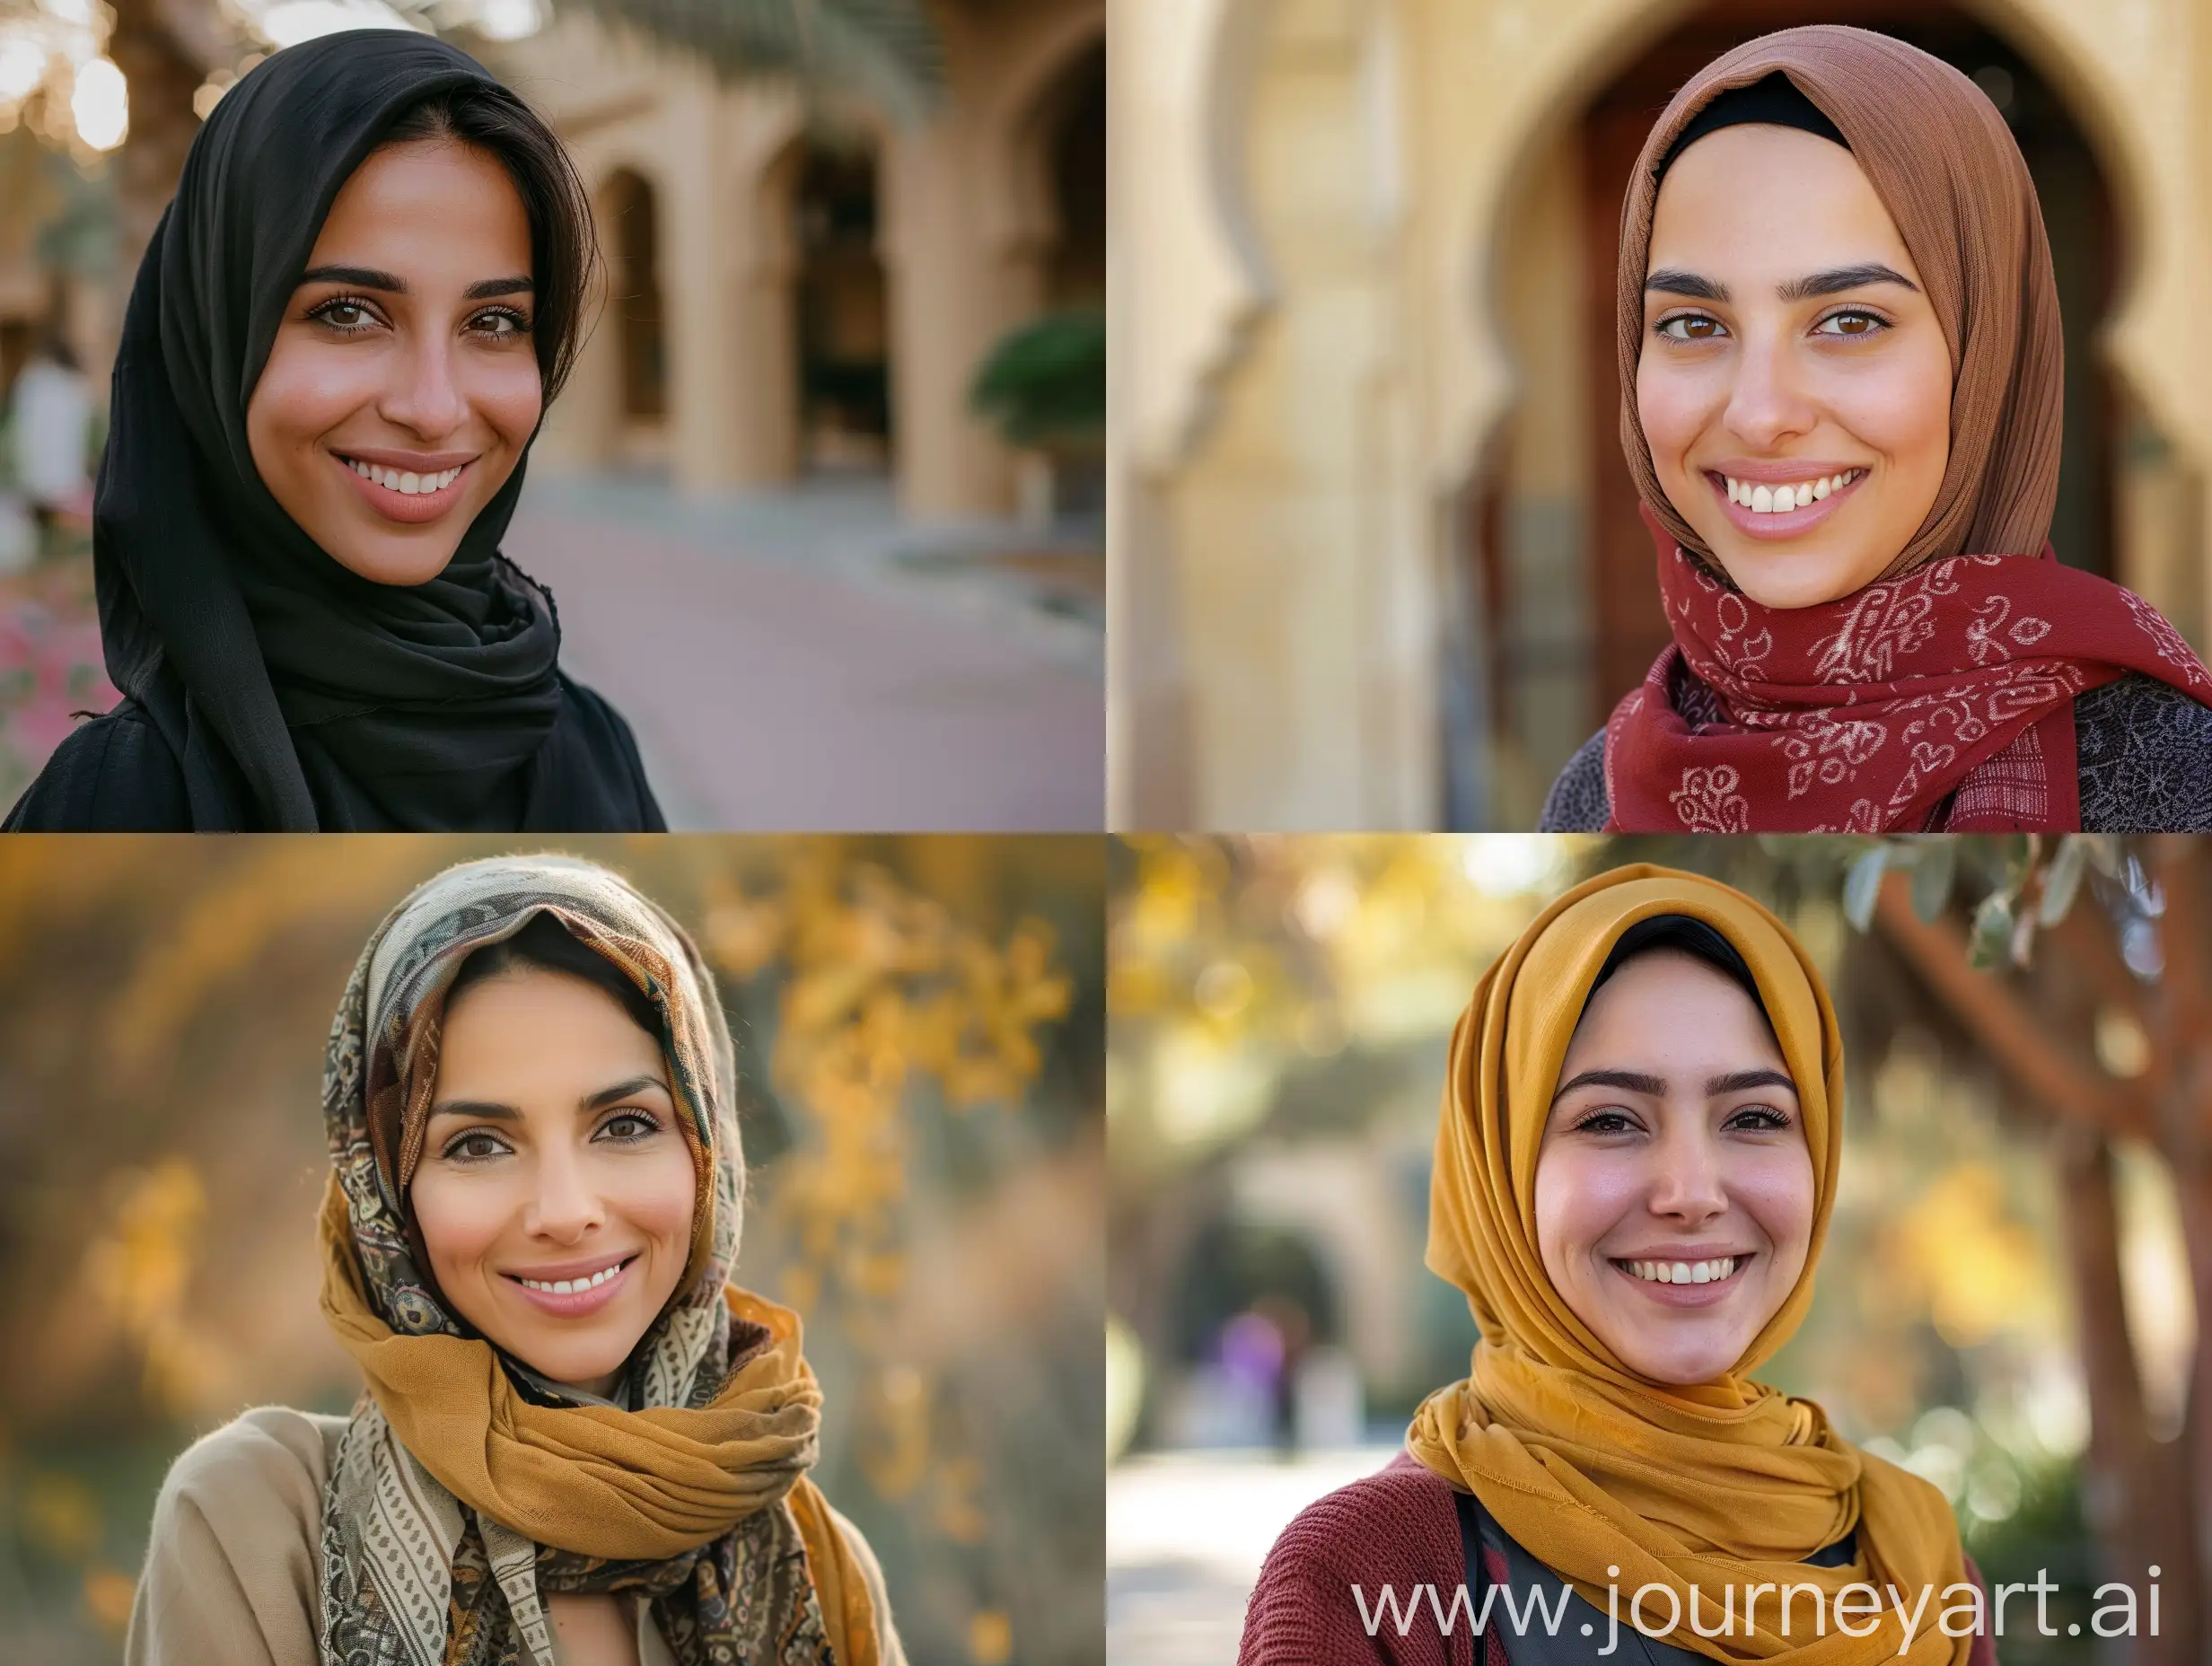 Natural and real photo of Arab woman smiling at the camera.